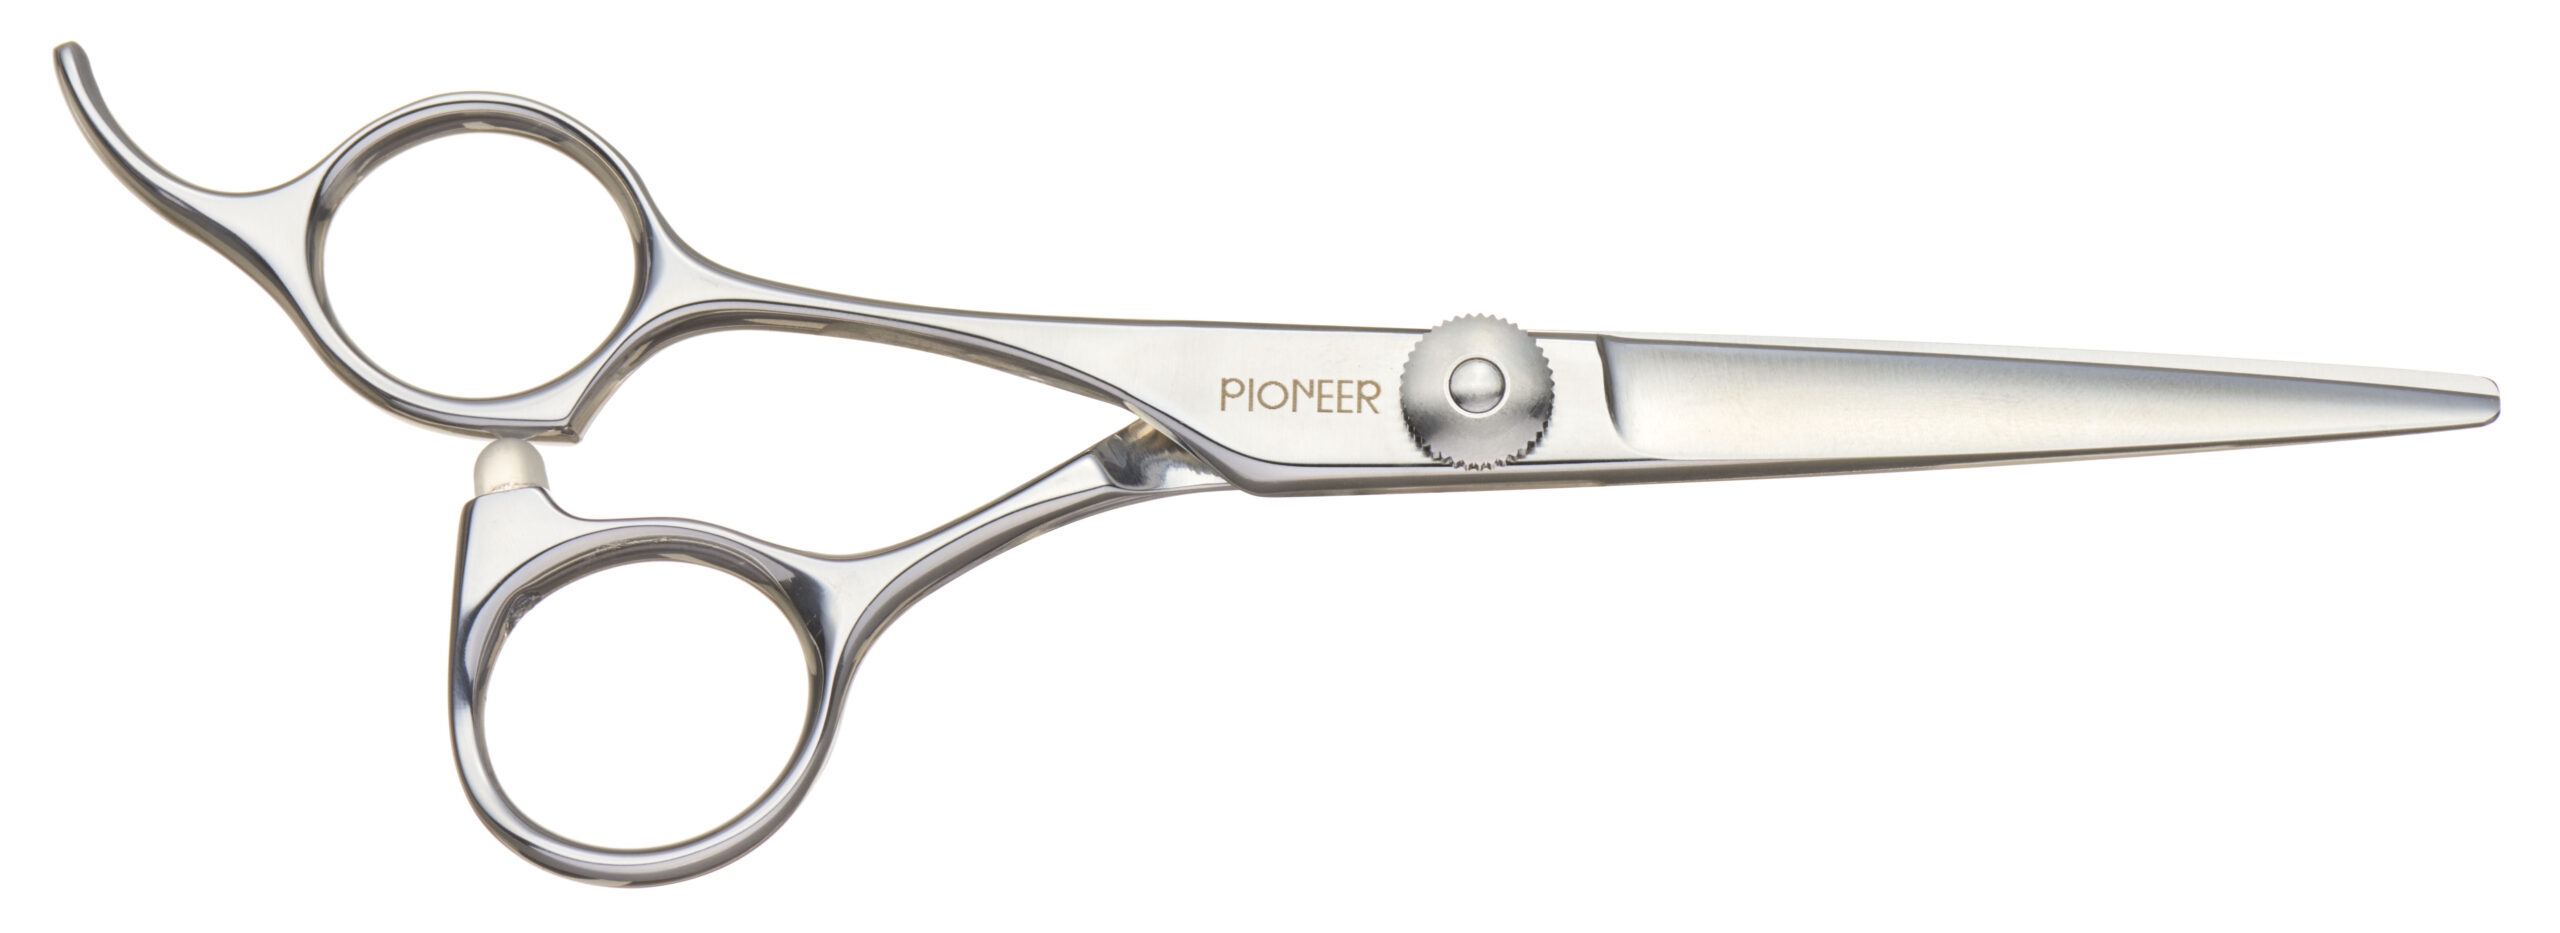 PIONEER – 理容・美容・ペットトリミング用シザーの東京理器 / Hair